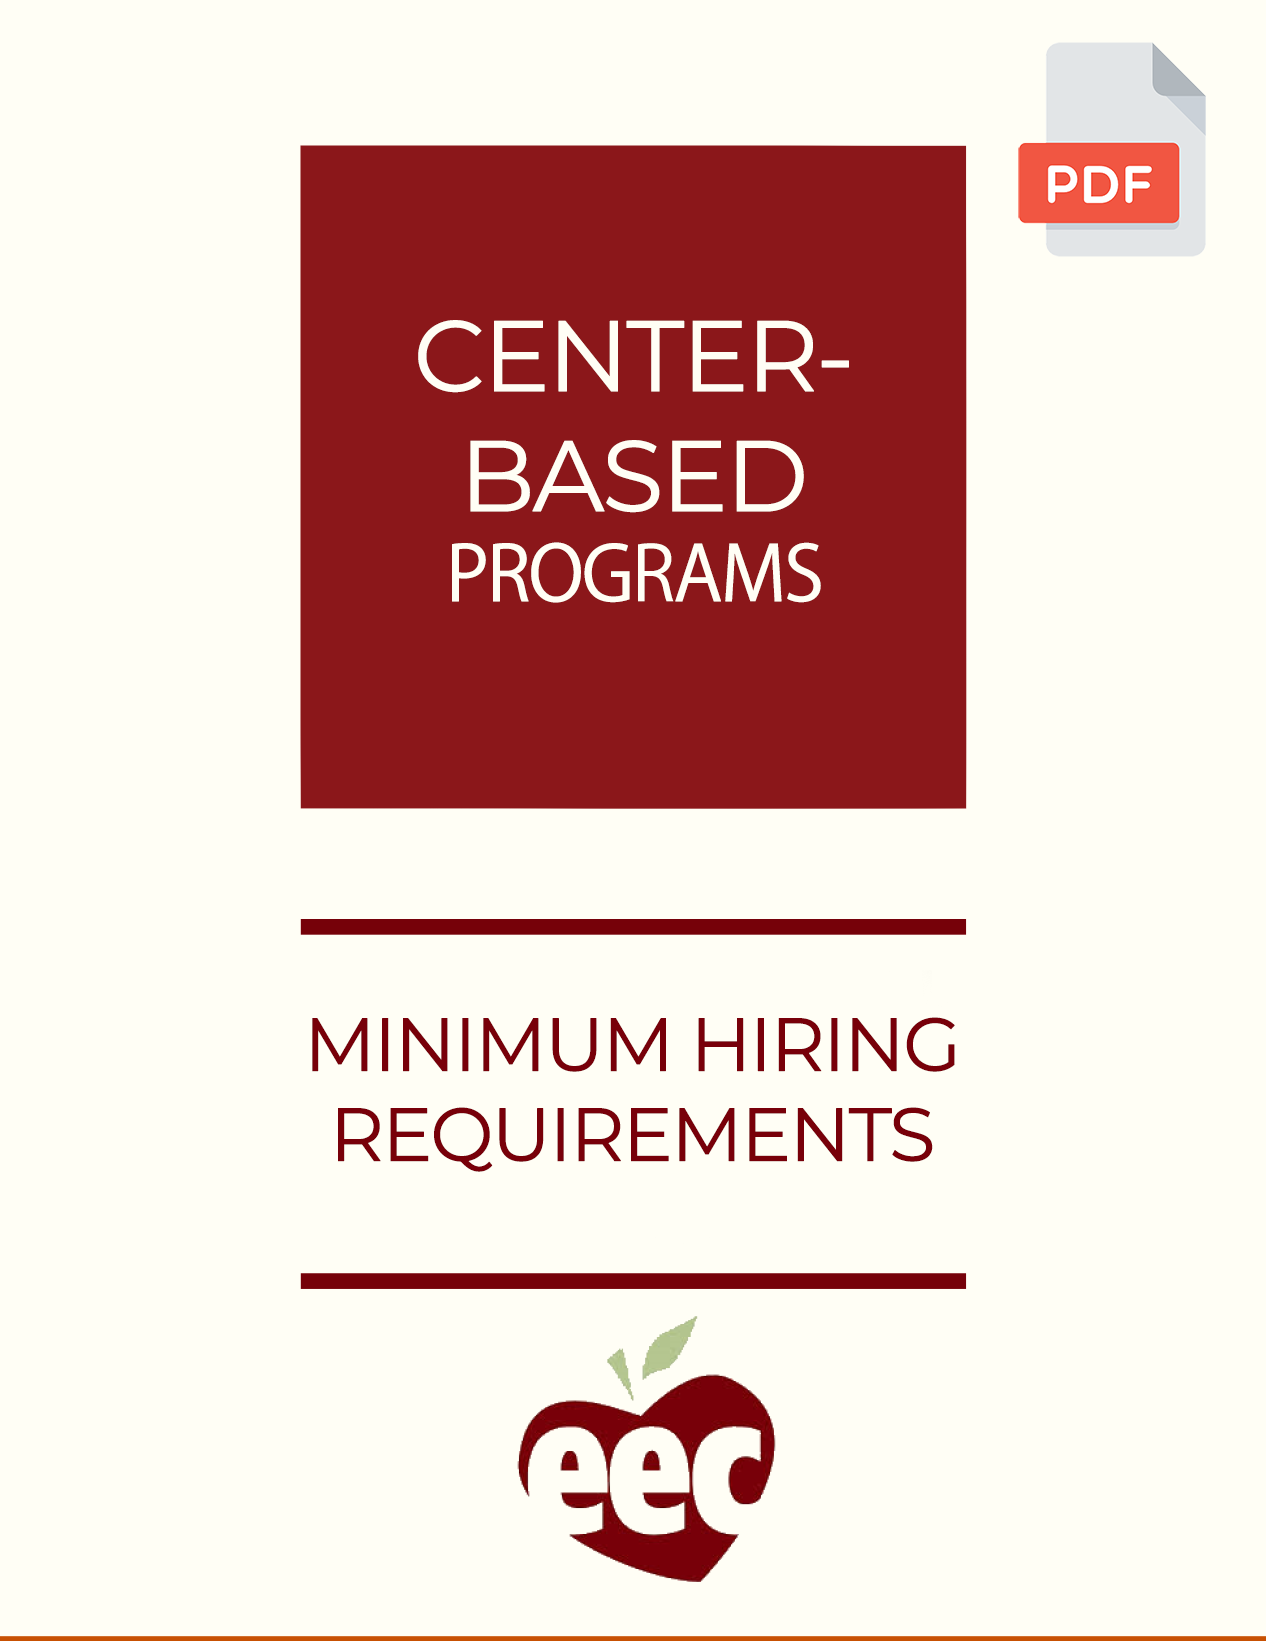 Clique para abrir a Lista de verificação de requisitos mínimos de contratação de programas baseados em centros